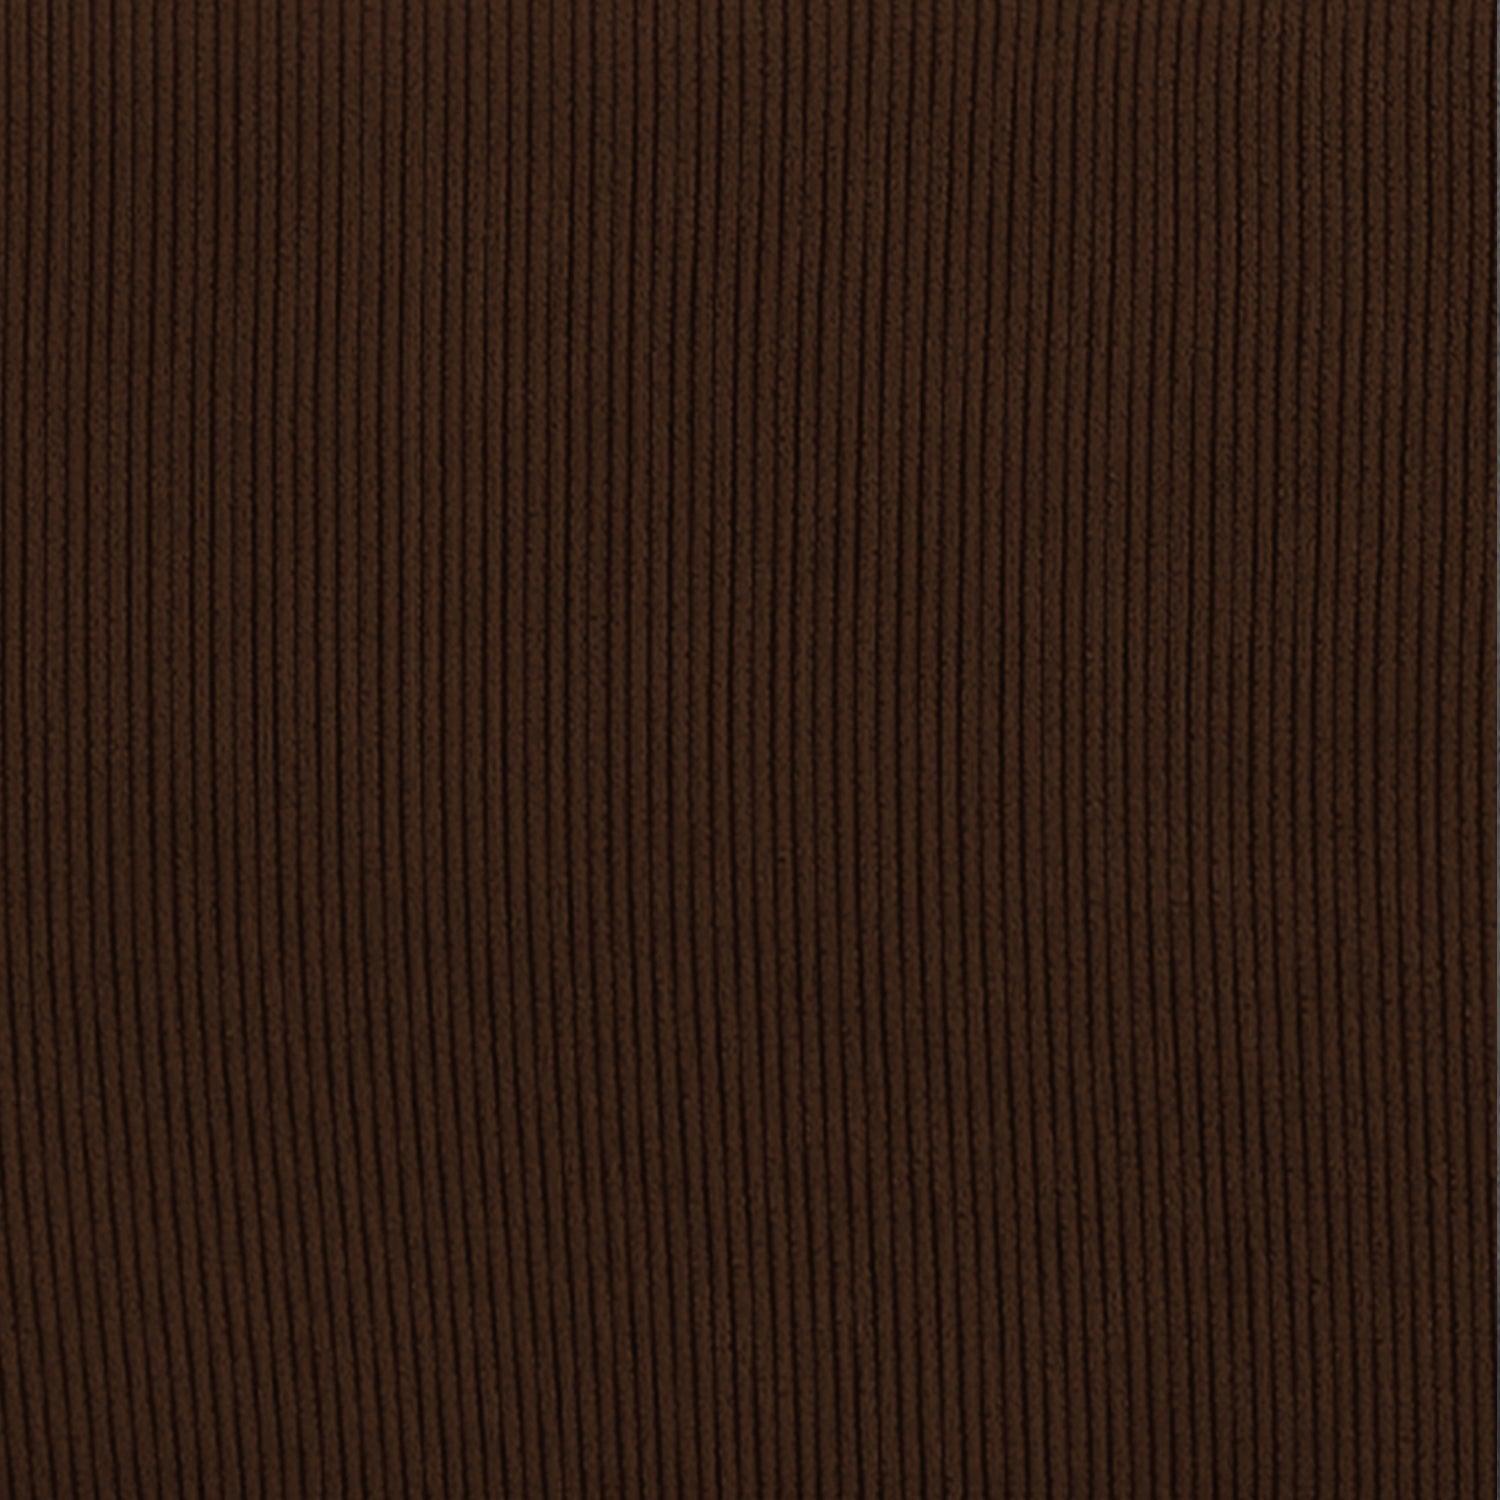 Funda de Sillón Relax Elástica Rústica ( 70 - 110 cm) - Eiffel Textile